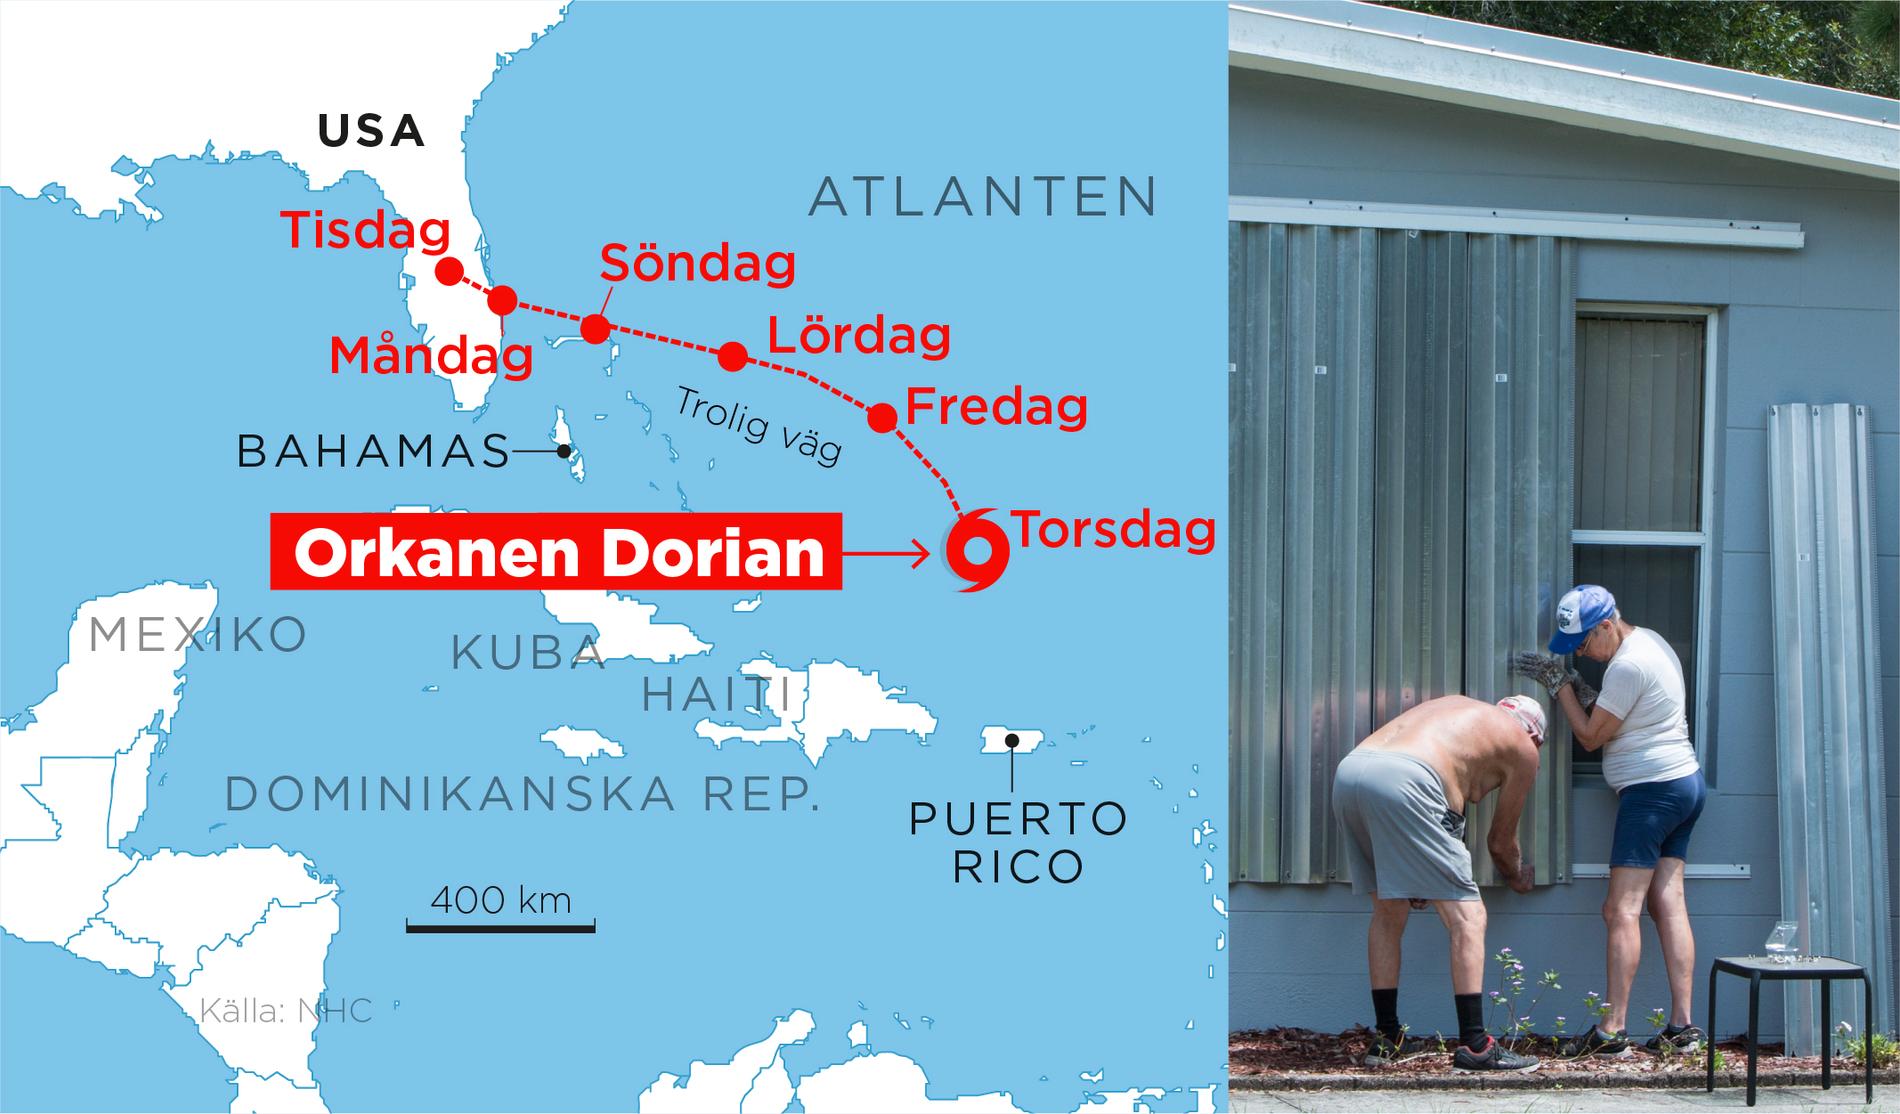 Orkanen Dorians väg mot USA.